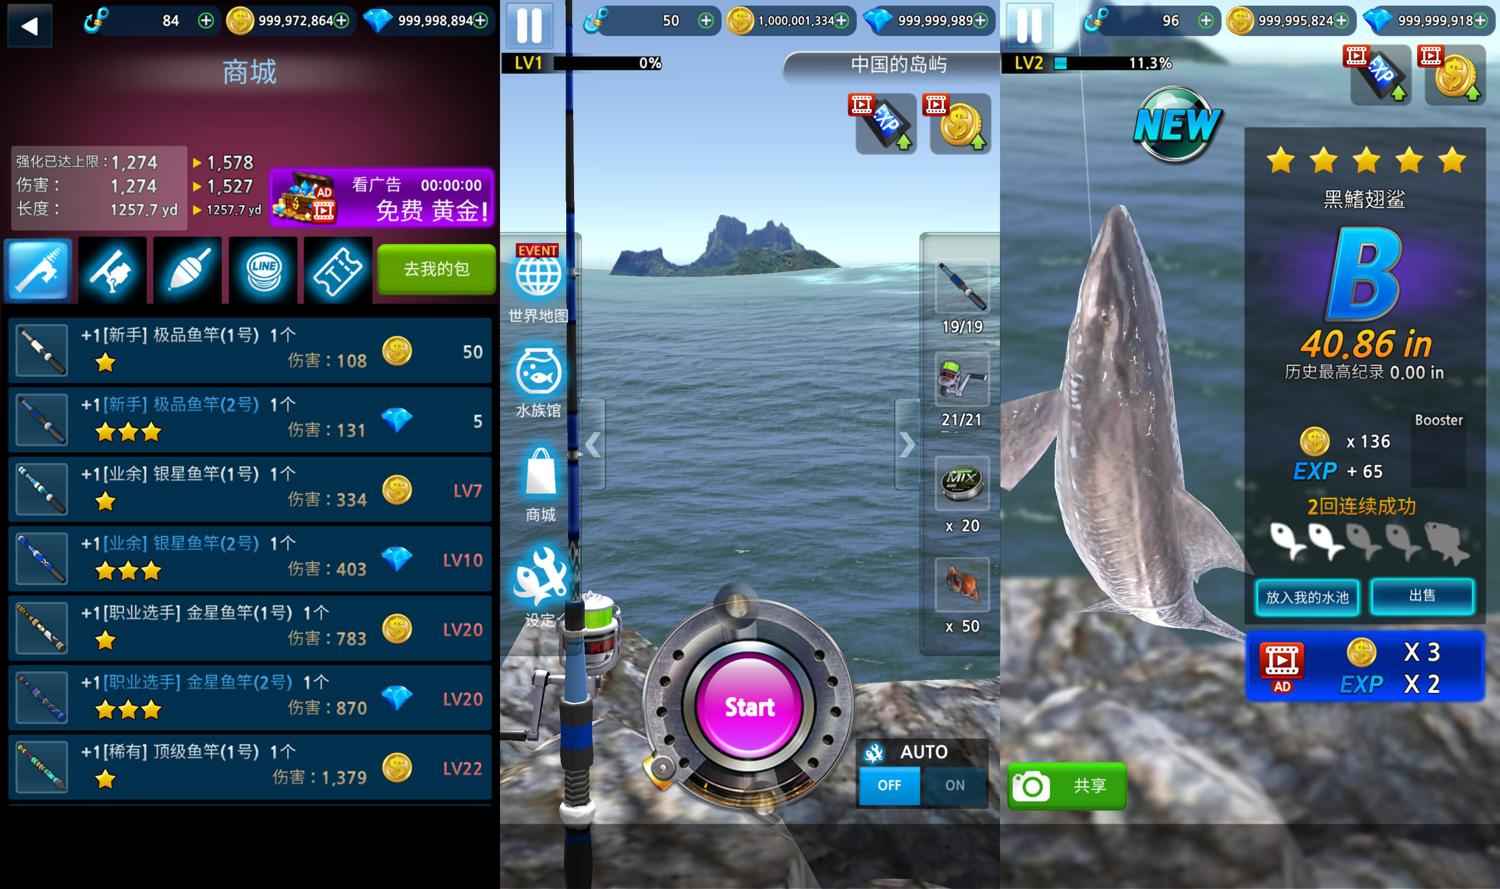 真3D海上垂钓模拟游戏 钓鱼达人  第1张